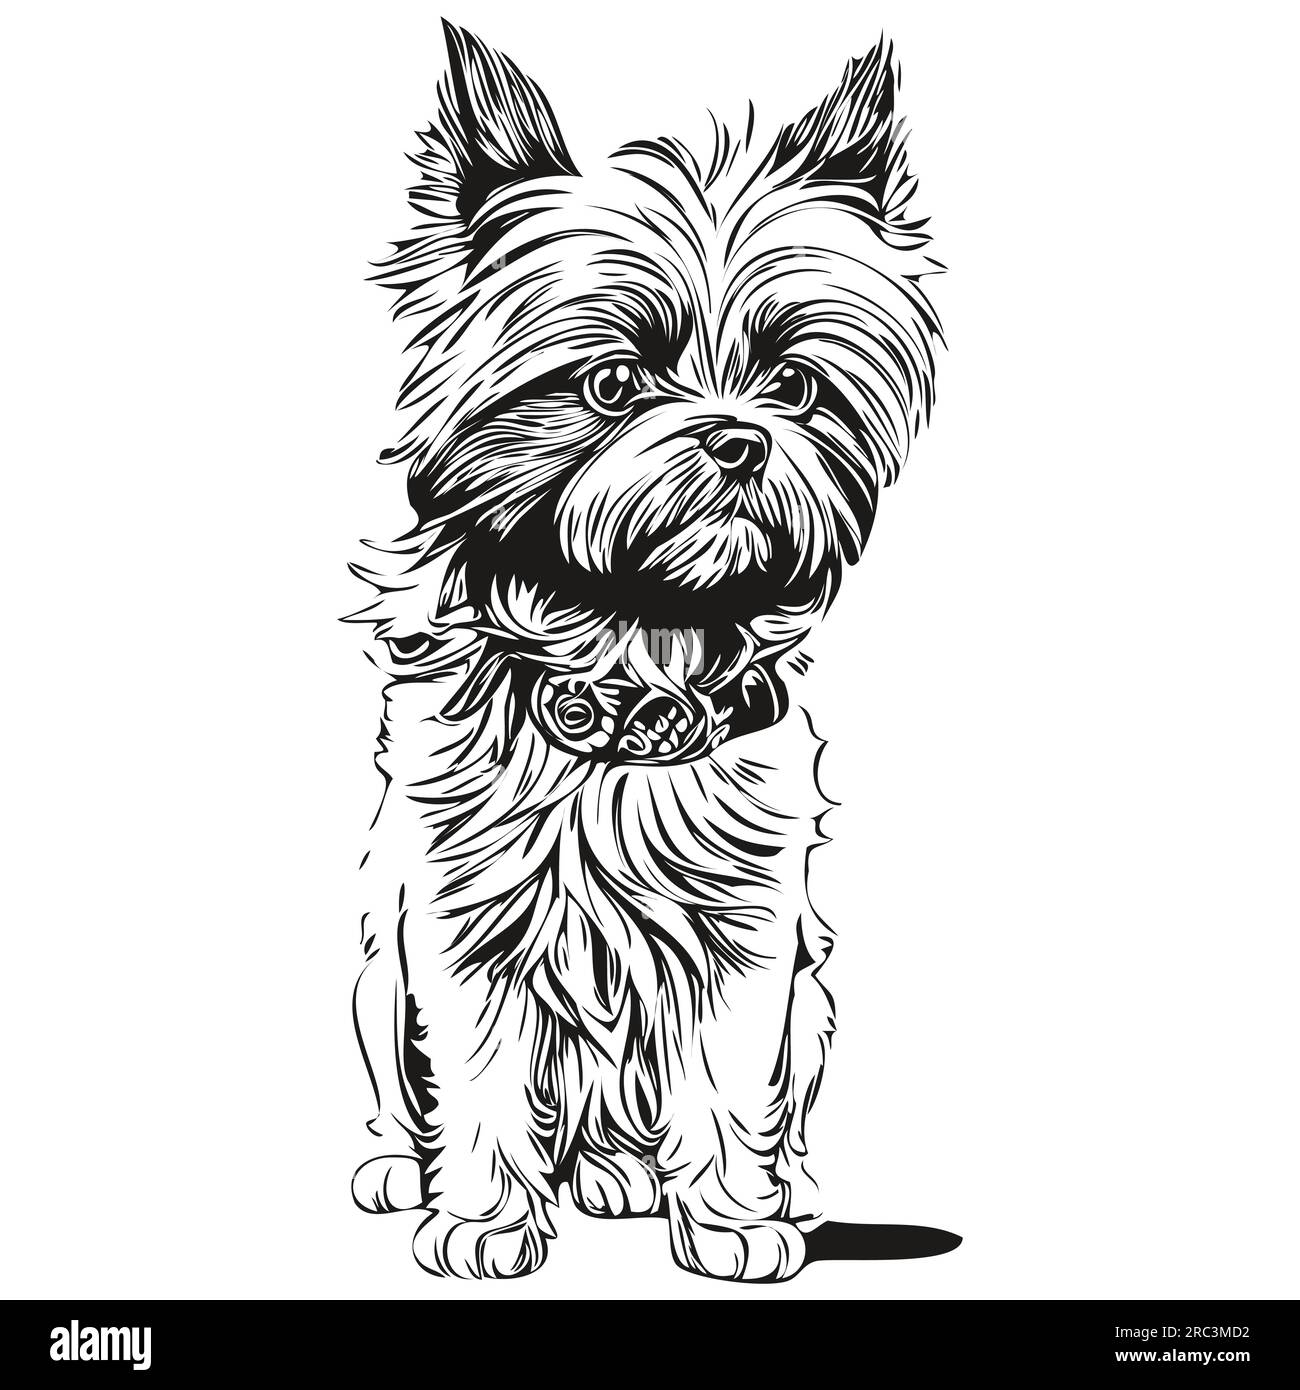 Affenpinscher chien gravé portrait vectoriel, dessin vintage dessin animé visage en silhouette d'animal de compagnie réaliste noir et blanc Illustration de Vecteur